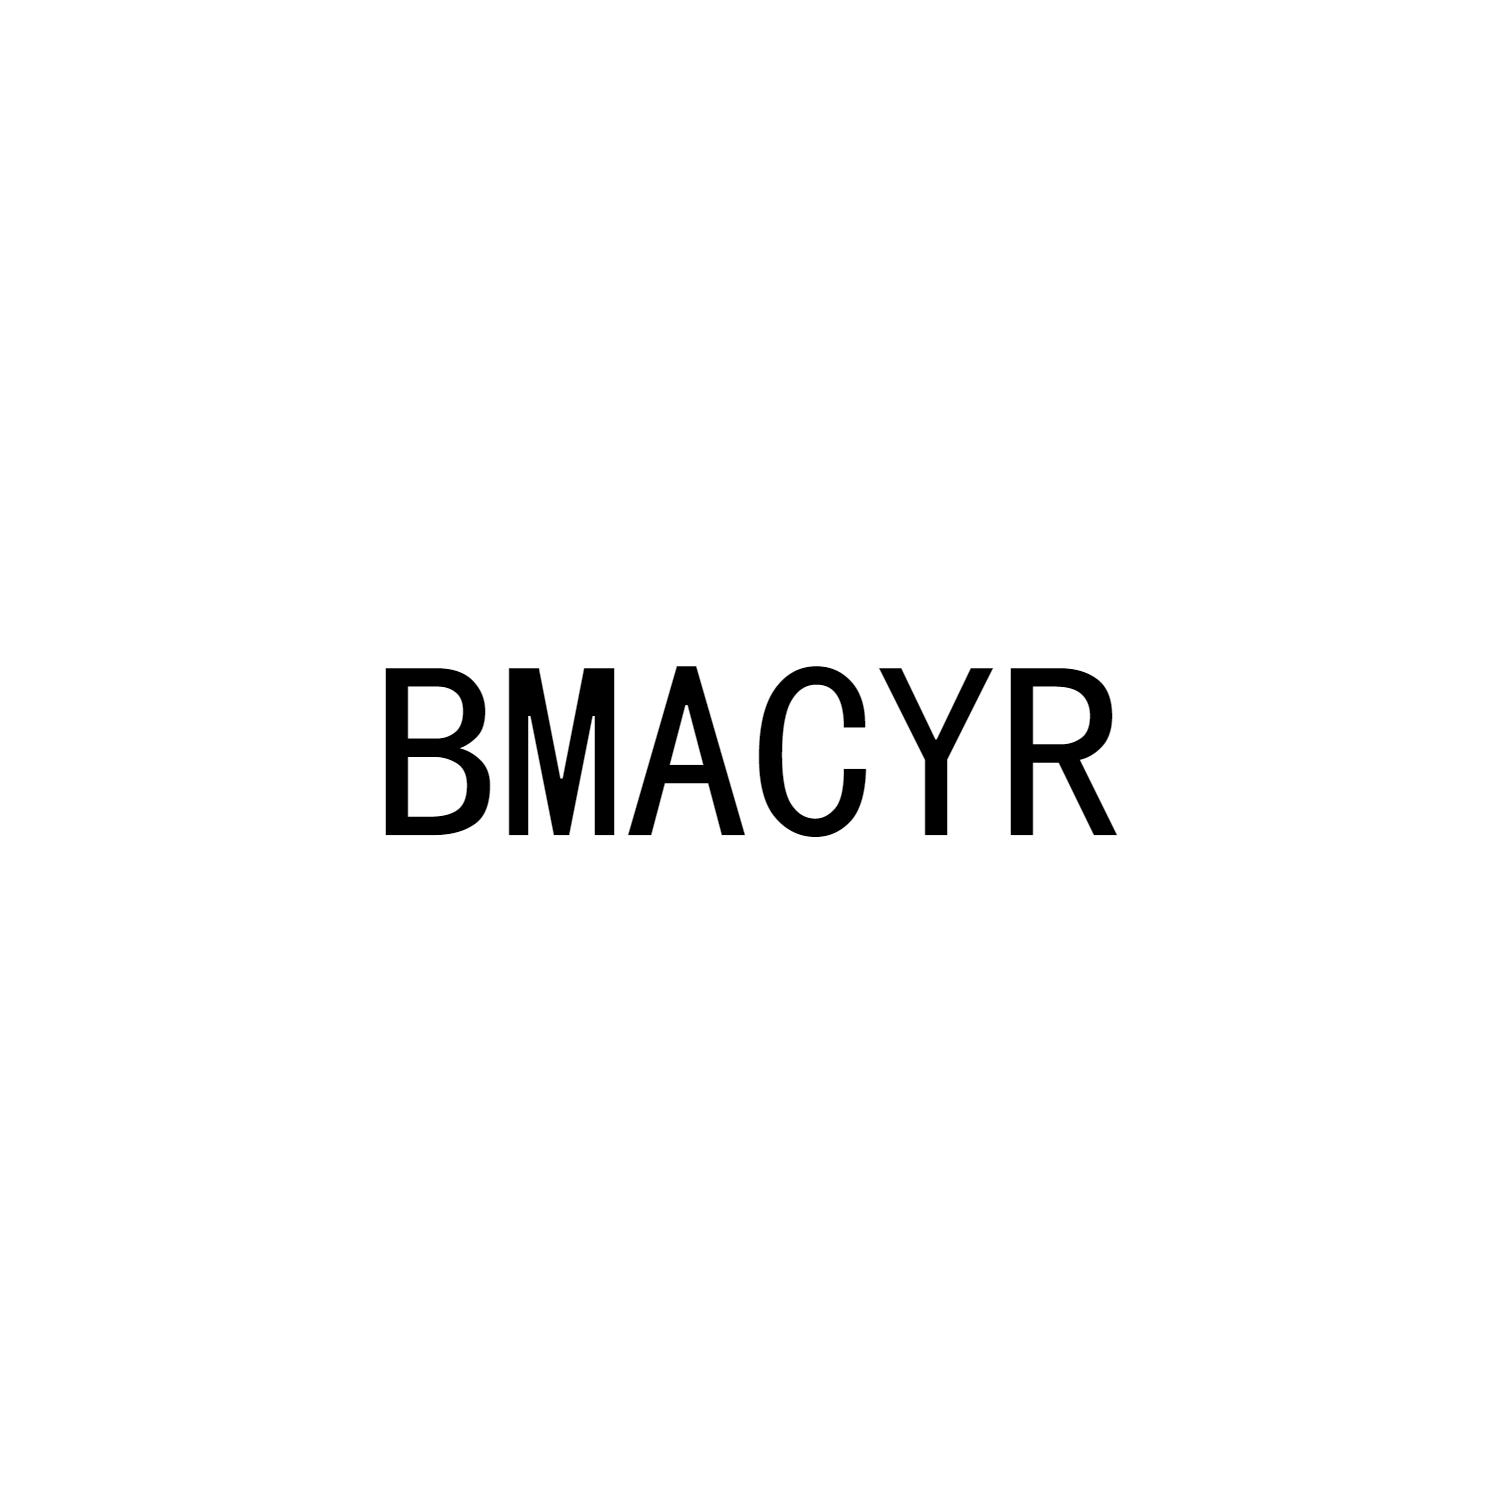 BMACYR